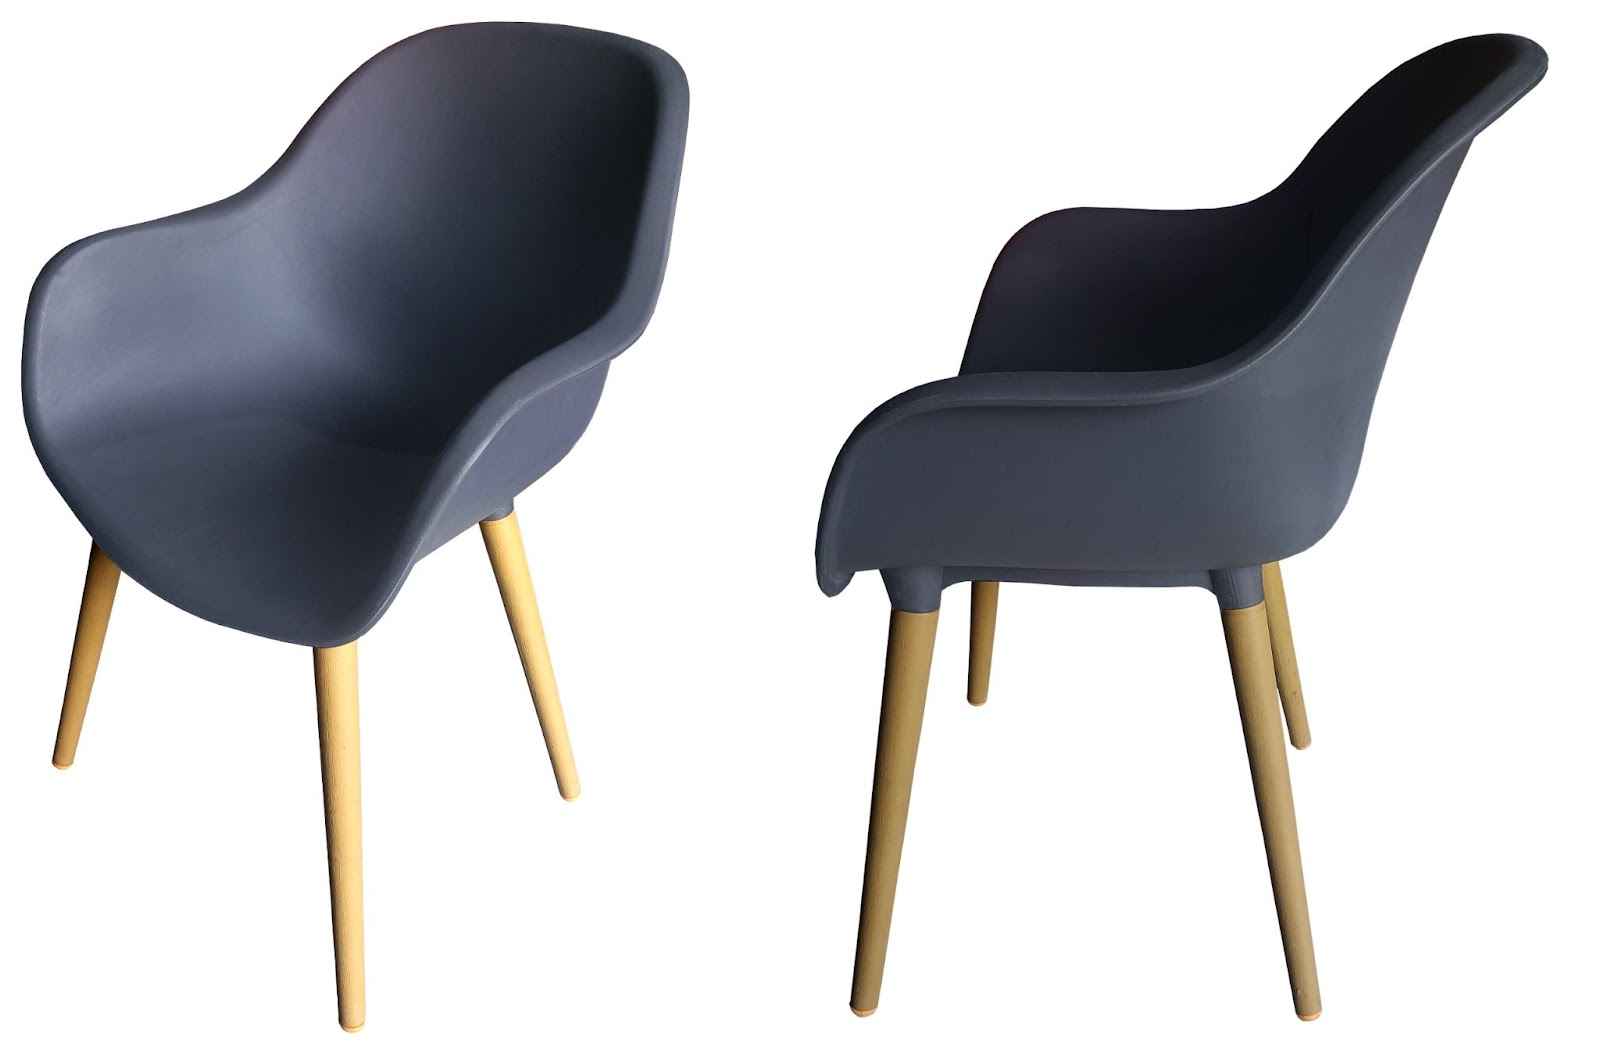 Ghế nhựa chân gỗ - một thiết kế đơn giản nhưng vô cùng sang trọng